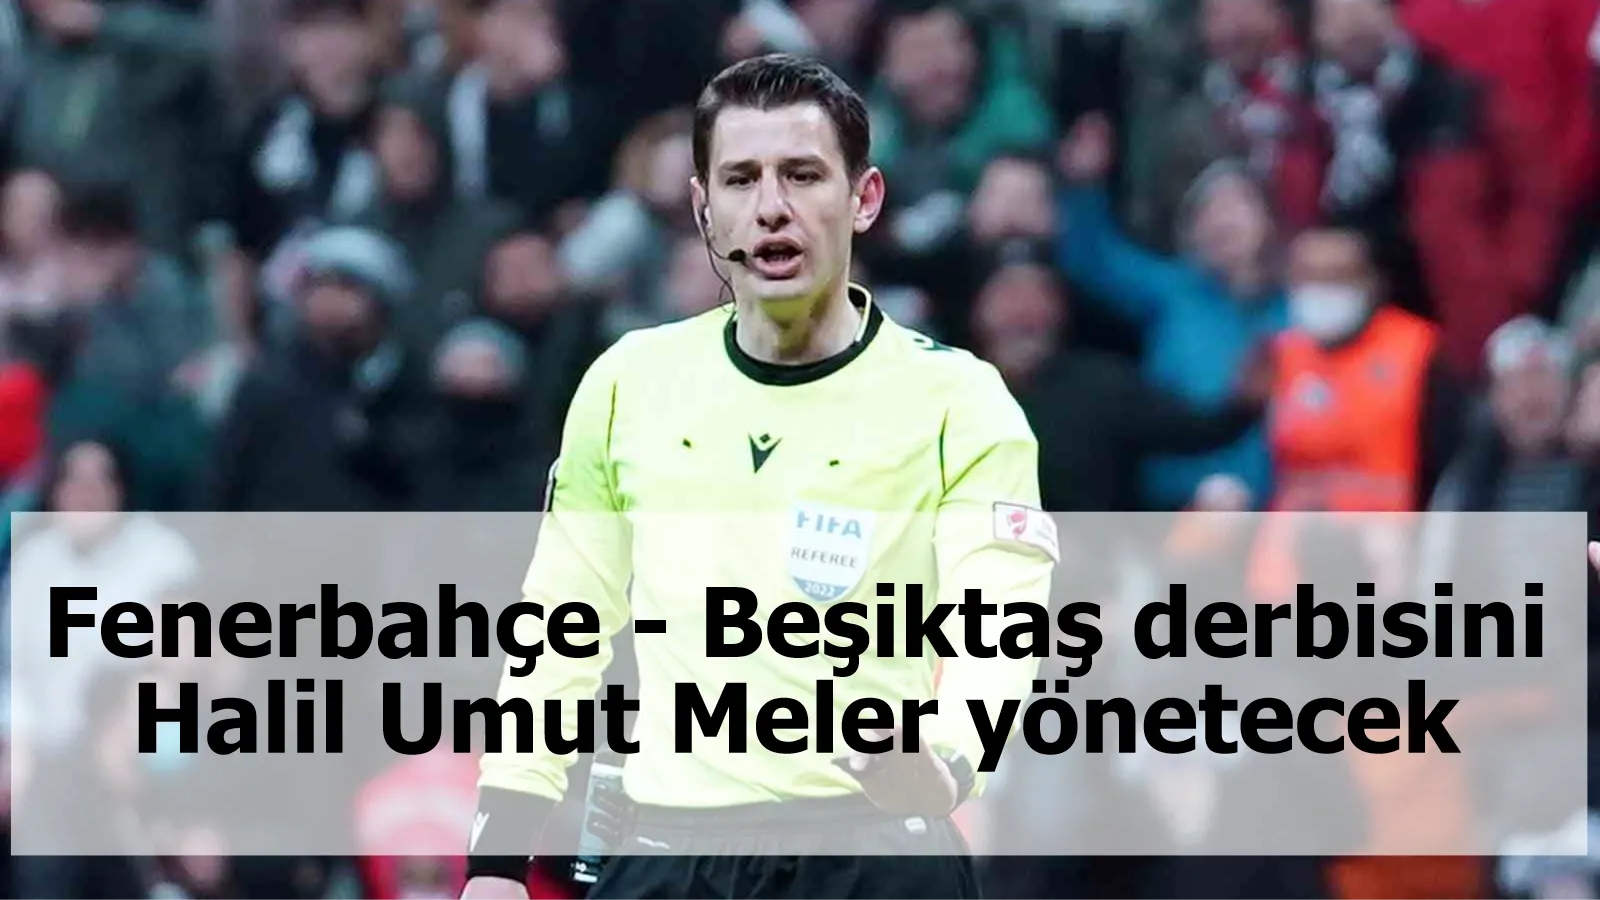 Fenerbahçe - Beşiktaş derbisini Halil Umut Meler yönetecek